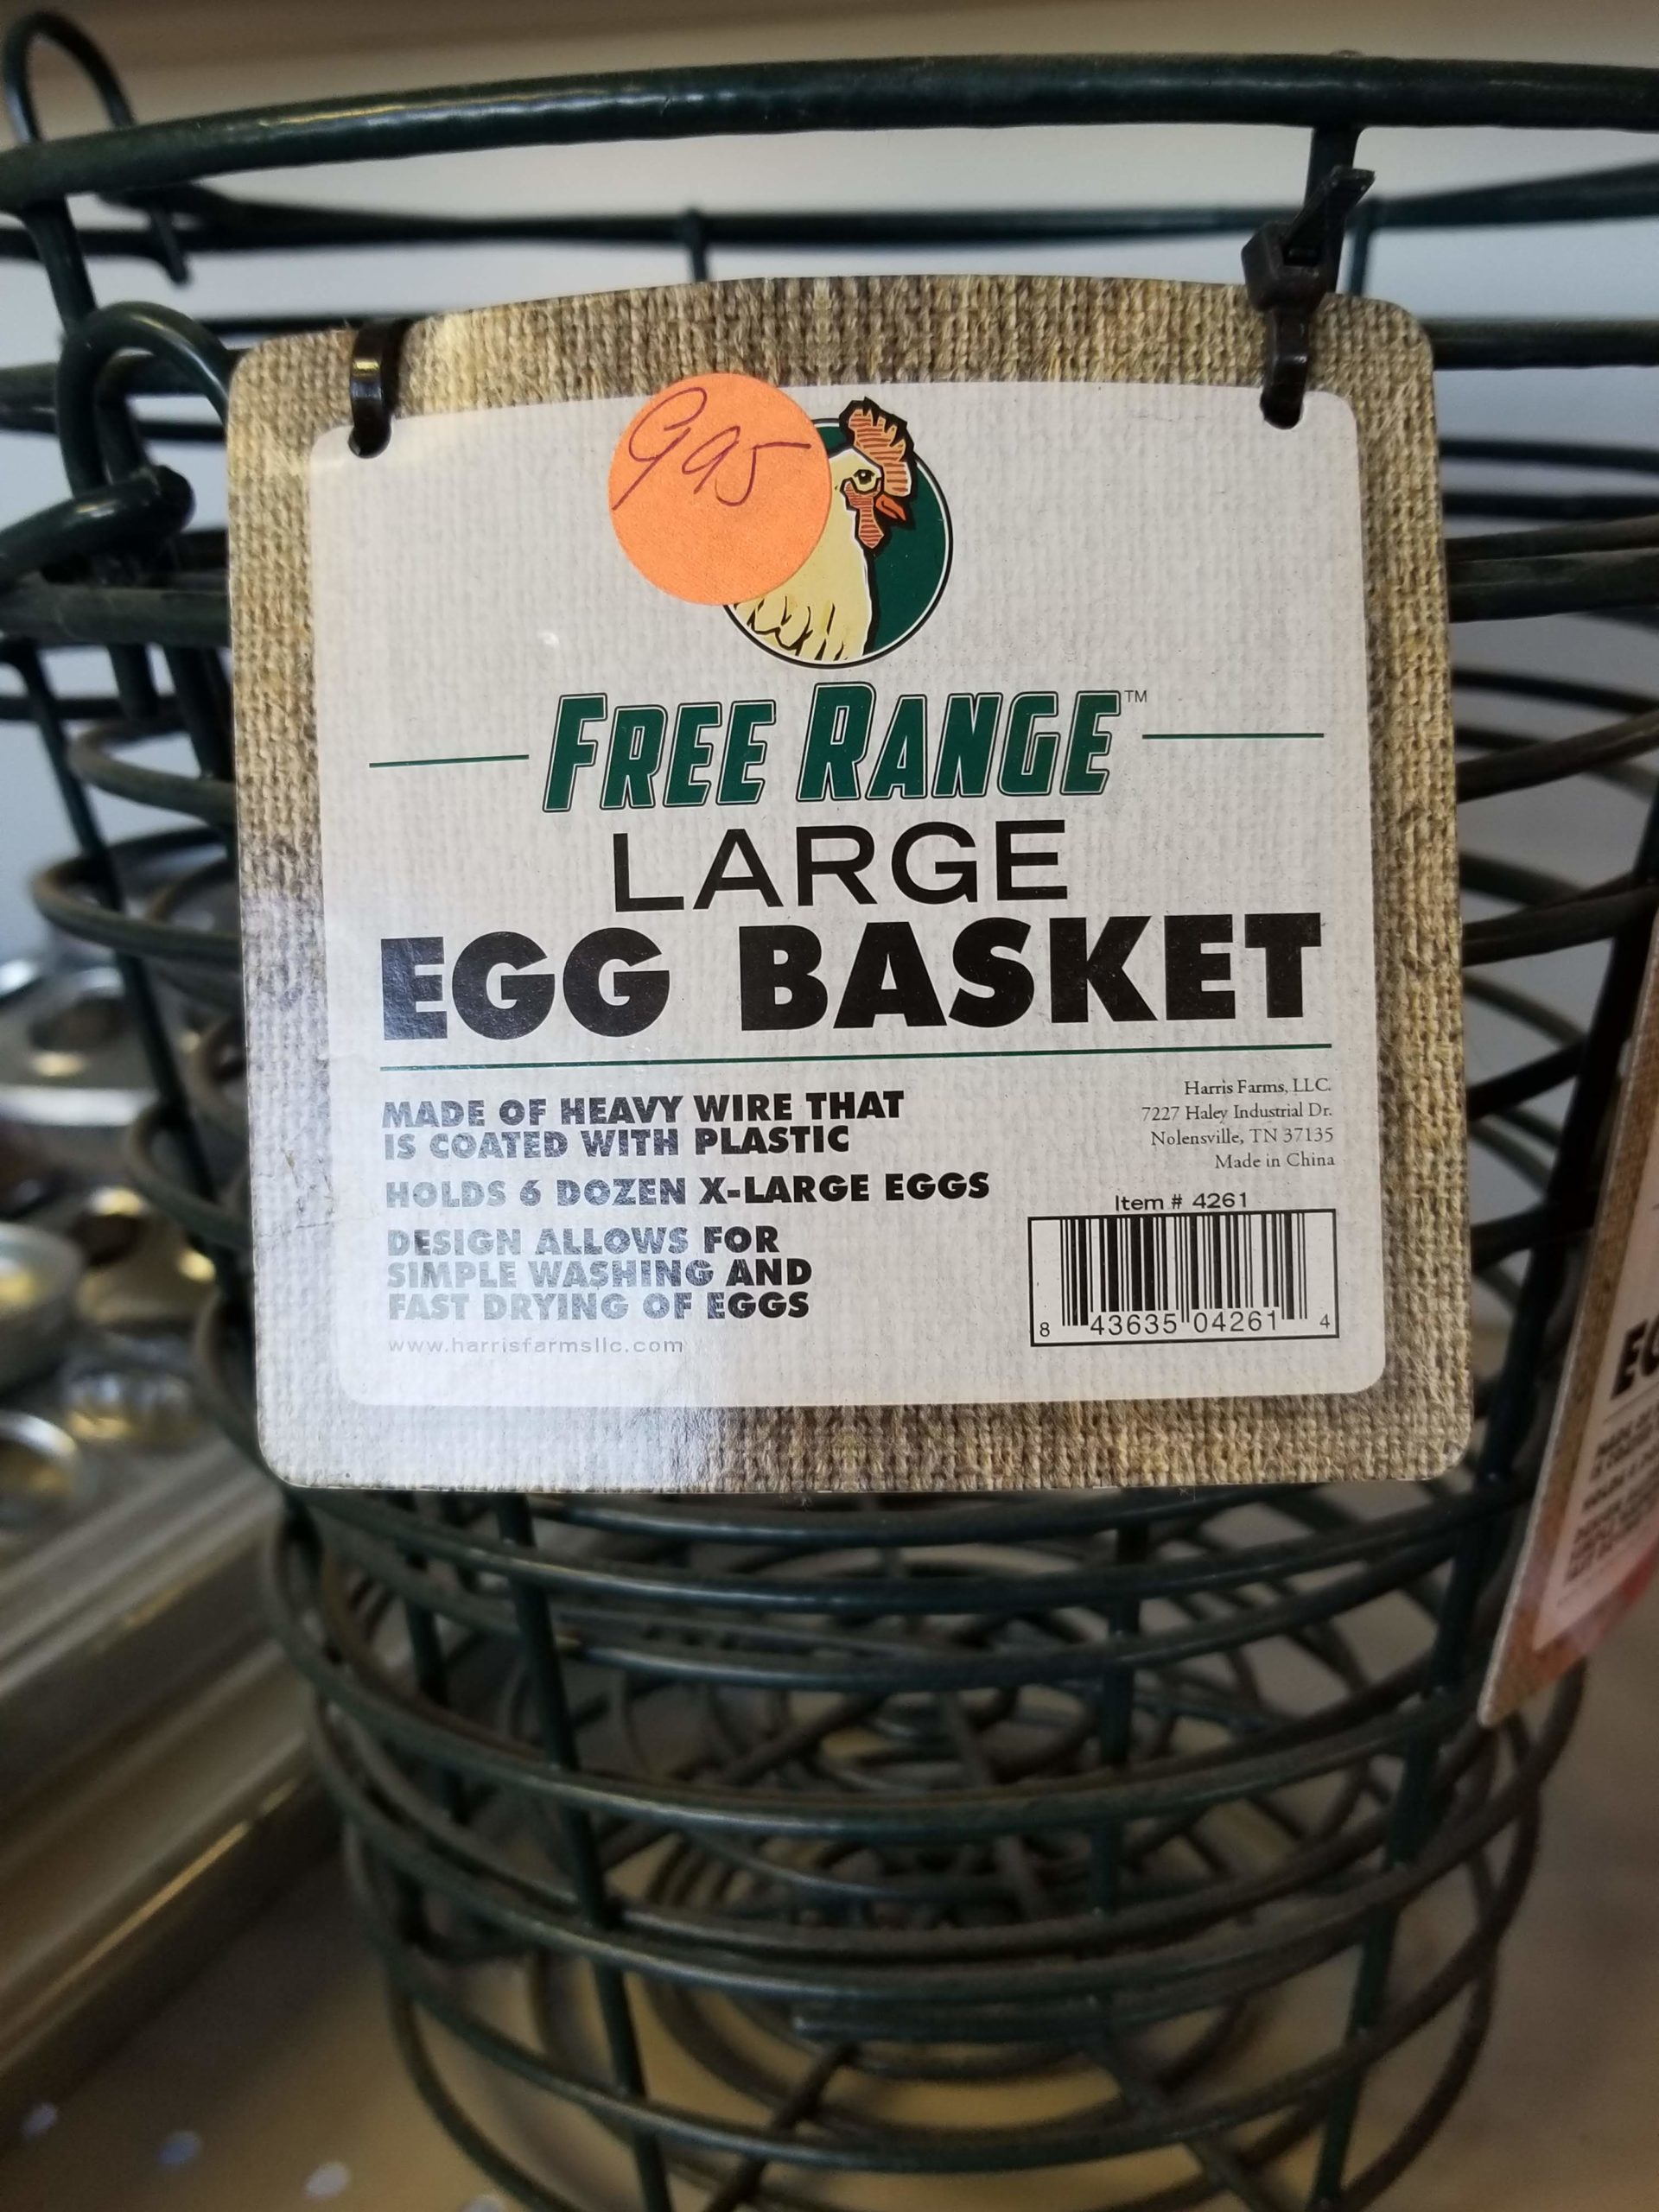 Large free range egg basket